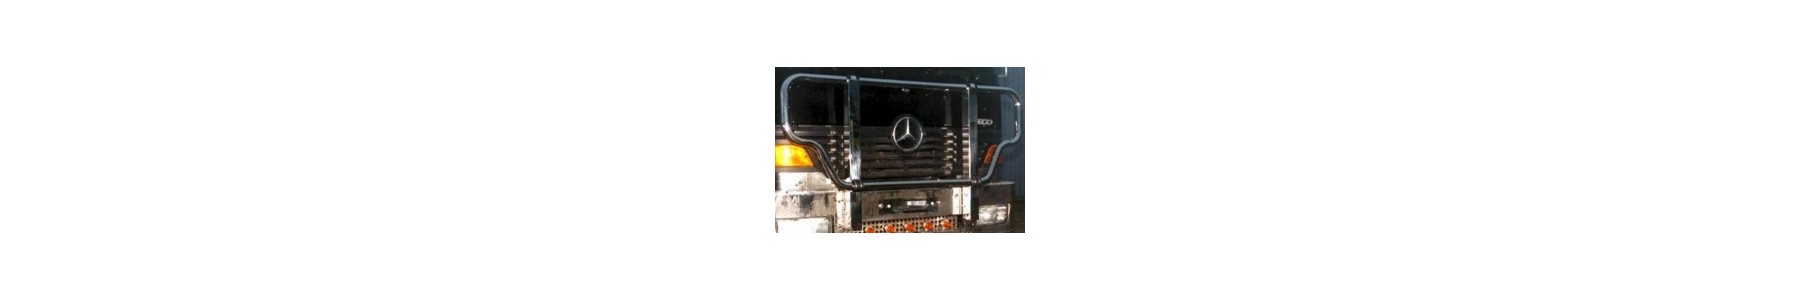 PARE BUFFLE pour votre camion Mercedes ATEGO 22h22: Vente accessoires tuning poids lourd